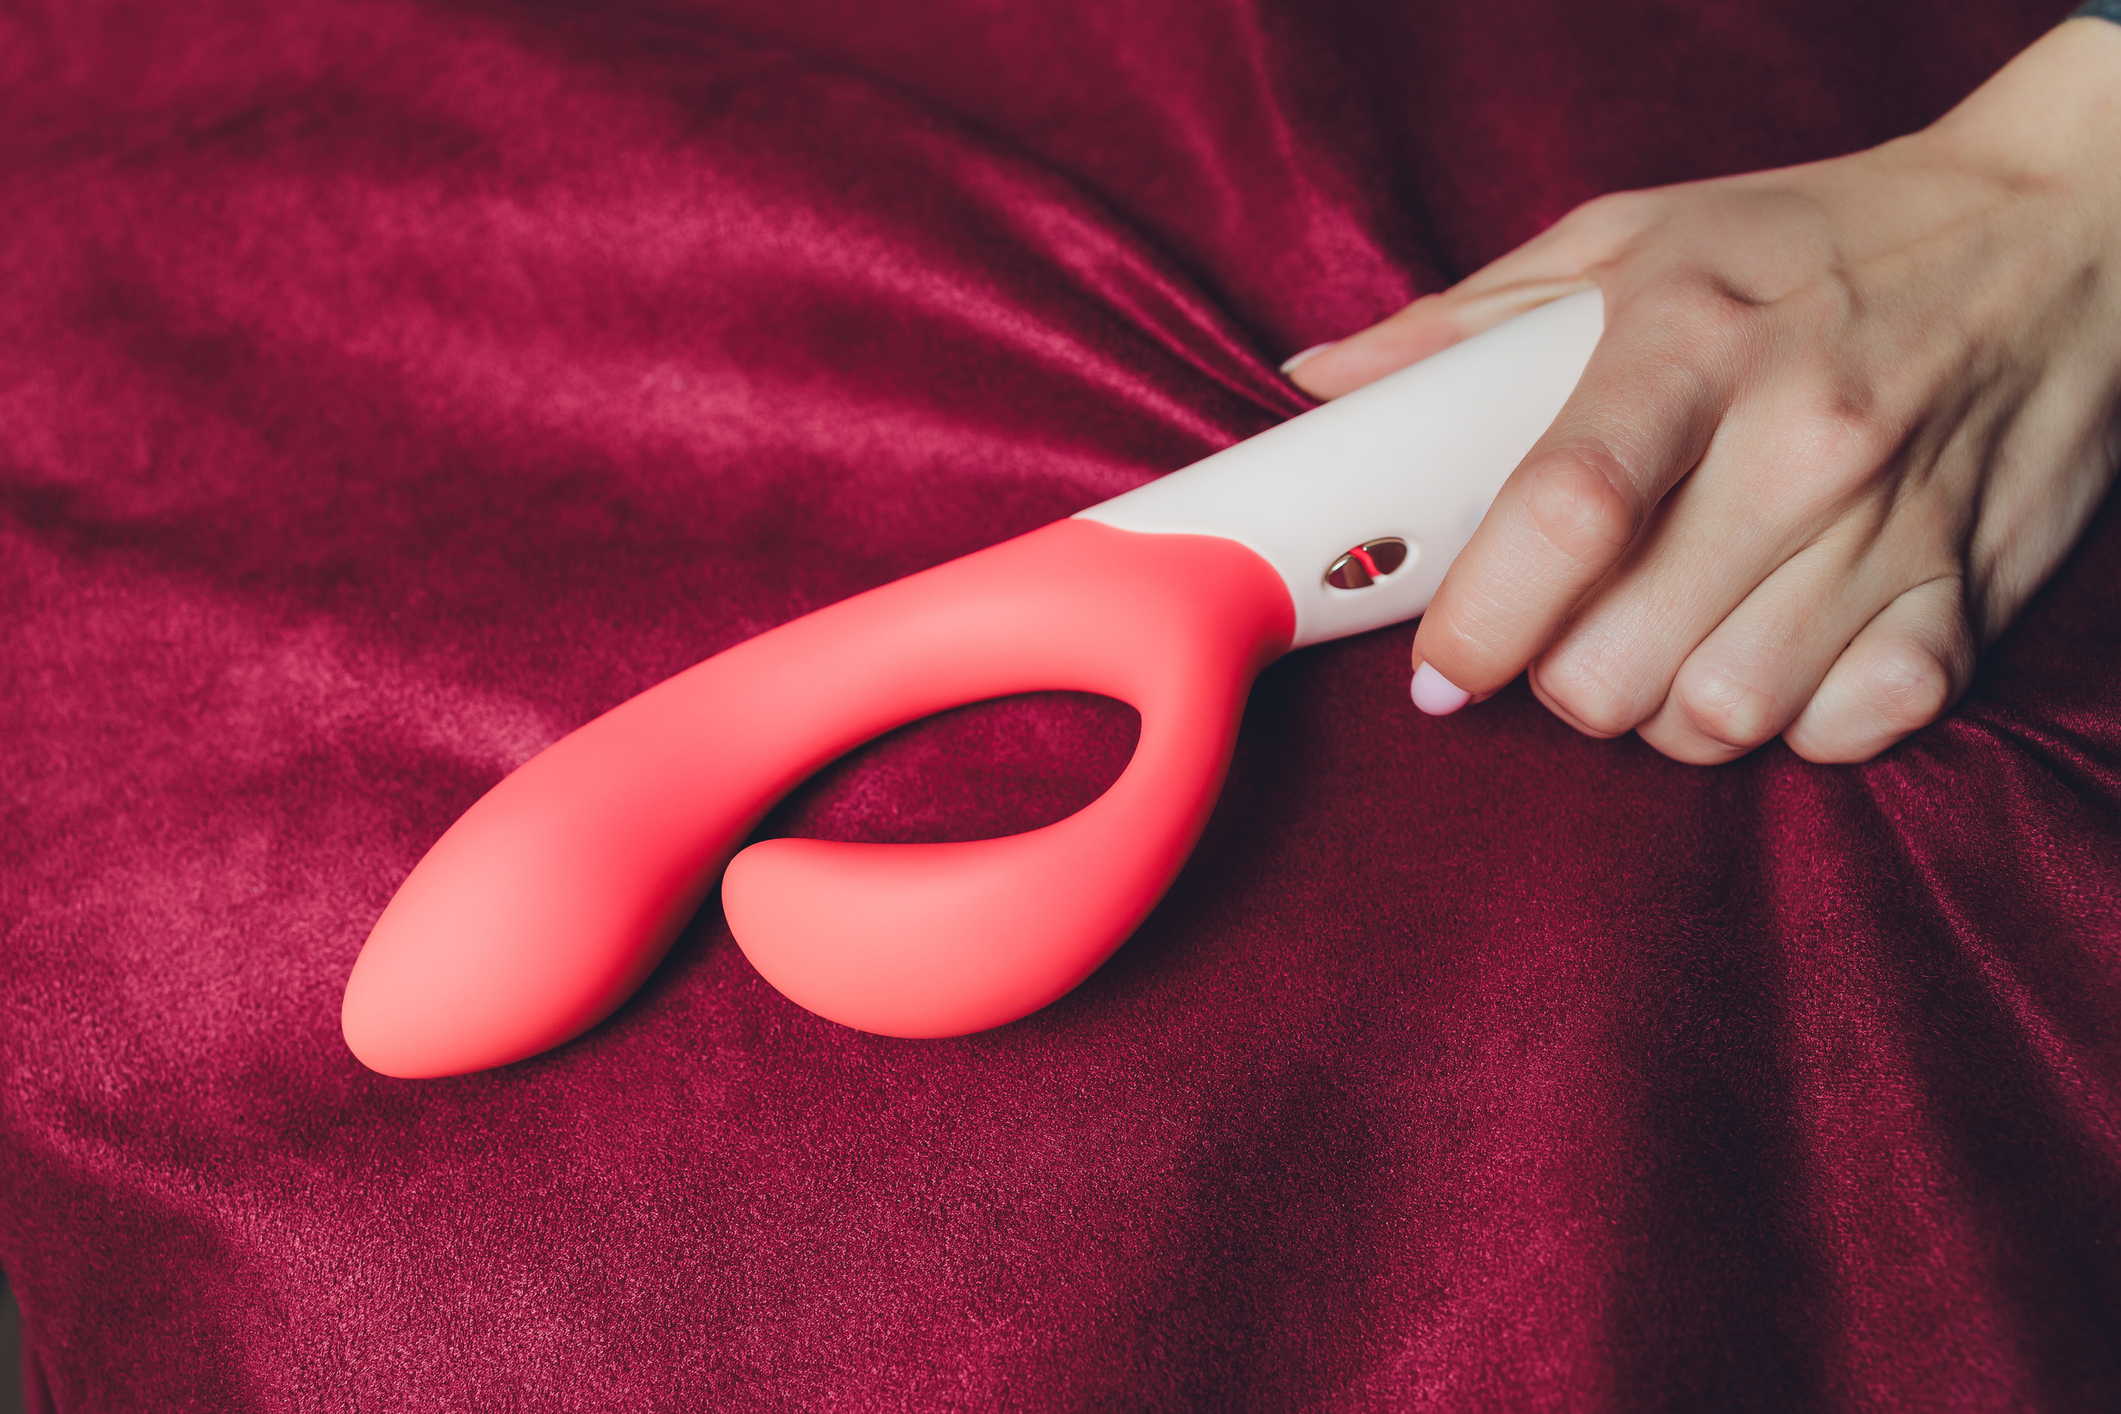 Doutor Jairo · Brinquedos sexuais 7 dicas simples para usá-los com segurança foto